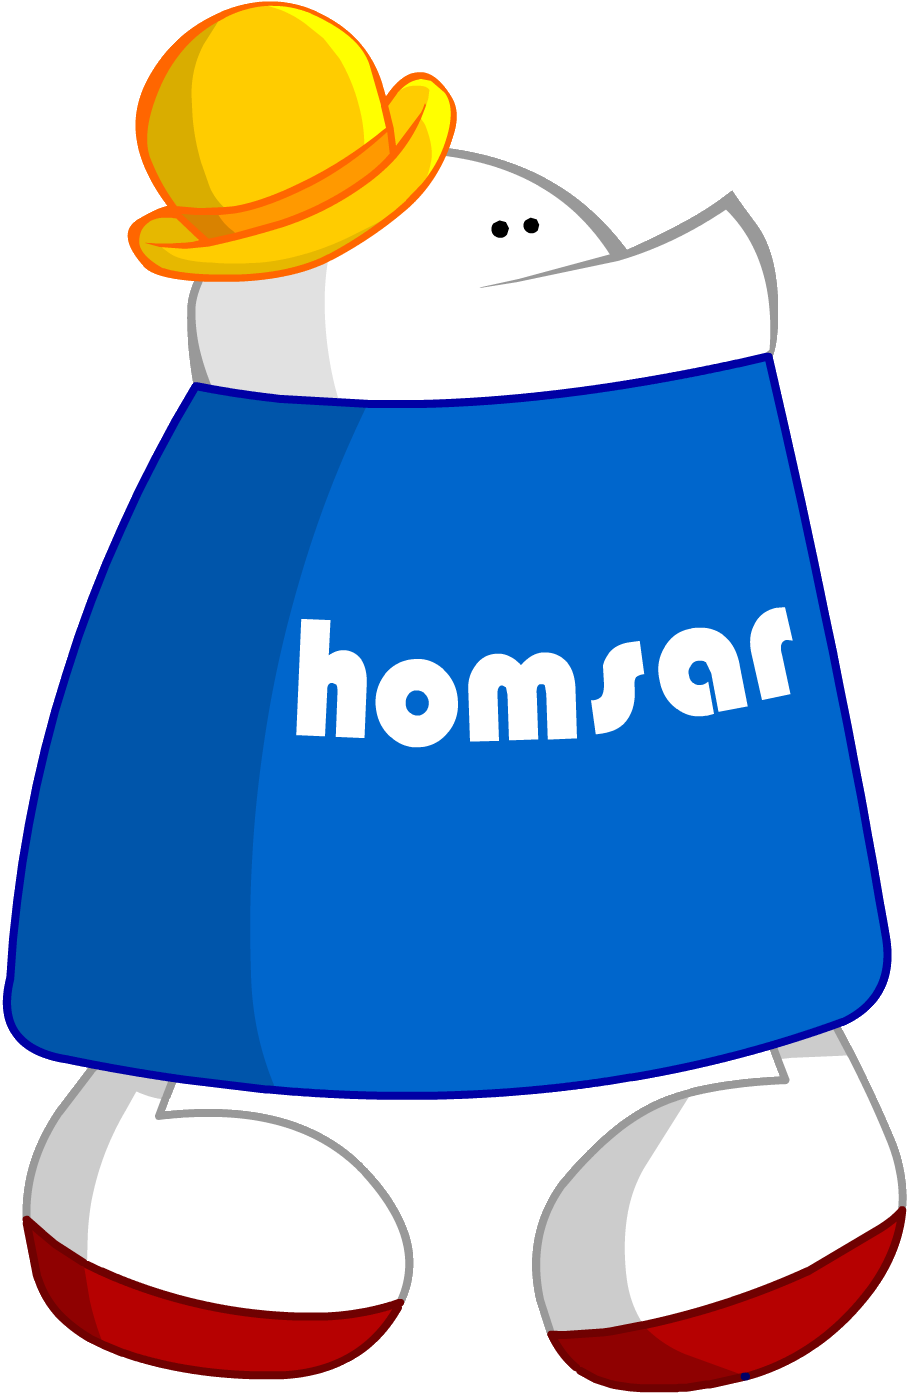 Similar ◊ - Homestar Runner Homsar (910x1396)